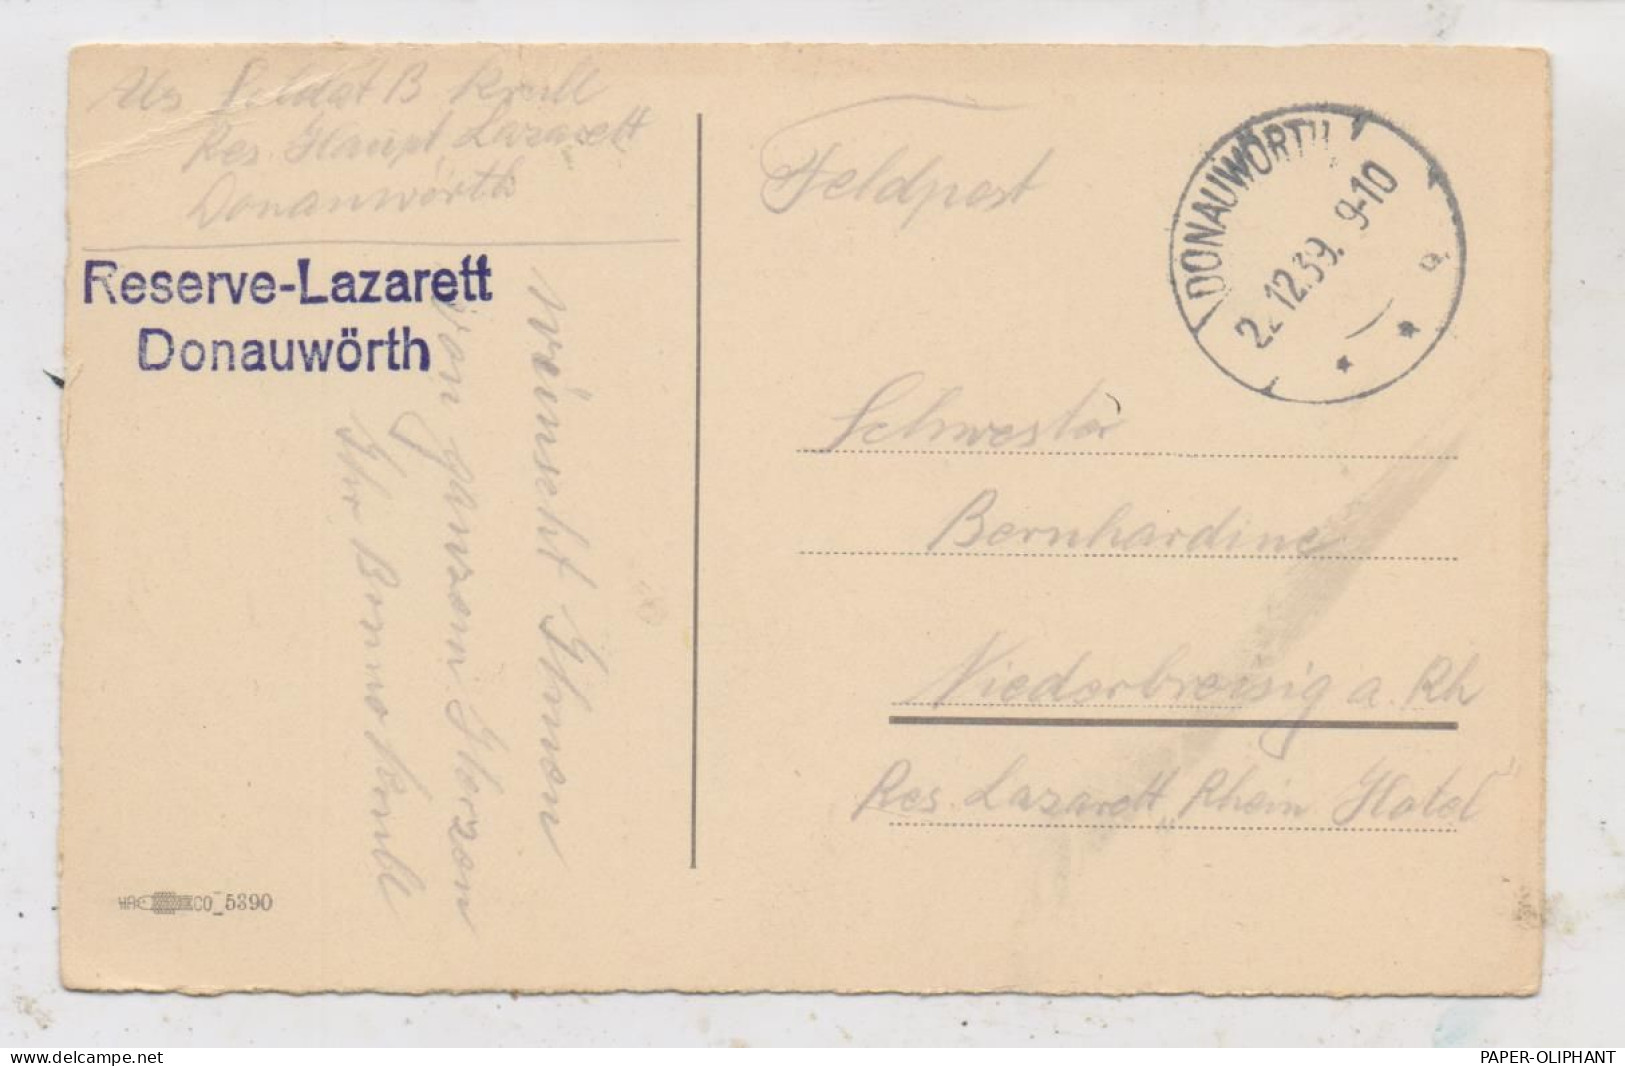 8850 DONAUWÖRTH, Postgeschichte, Feldpost Dezember 1939, Reserve Lazarett - Donauwörth